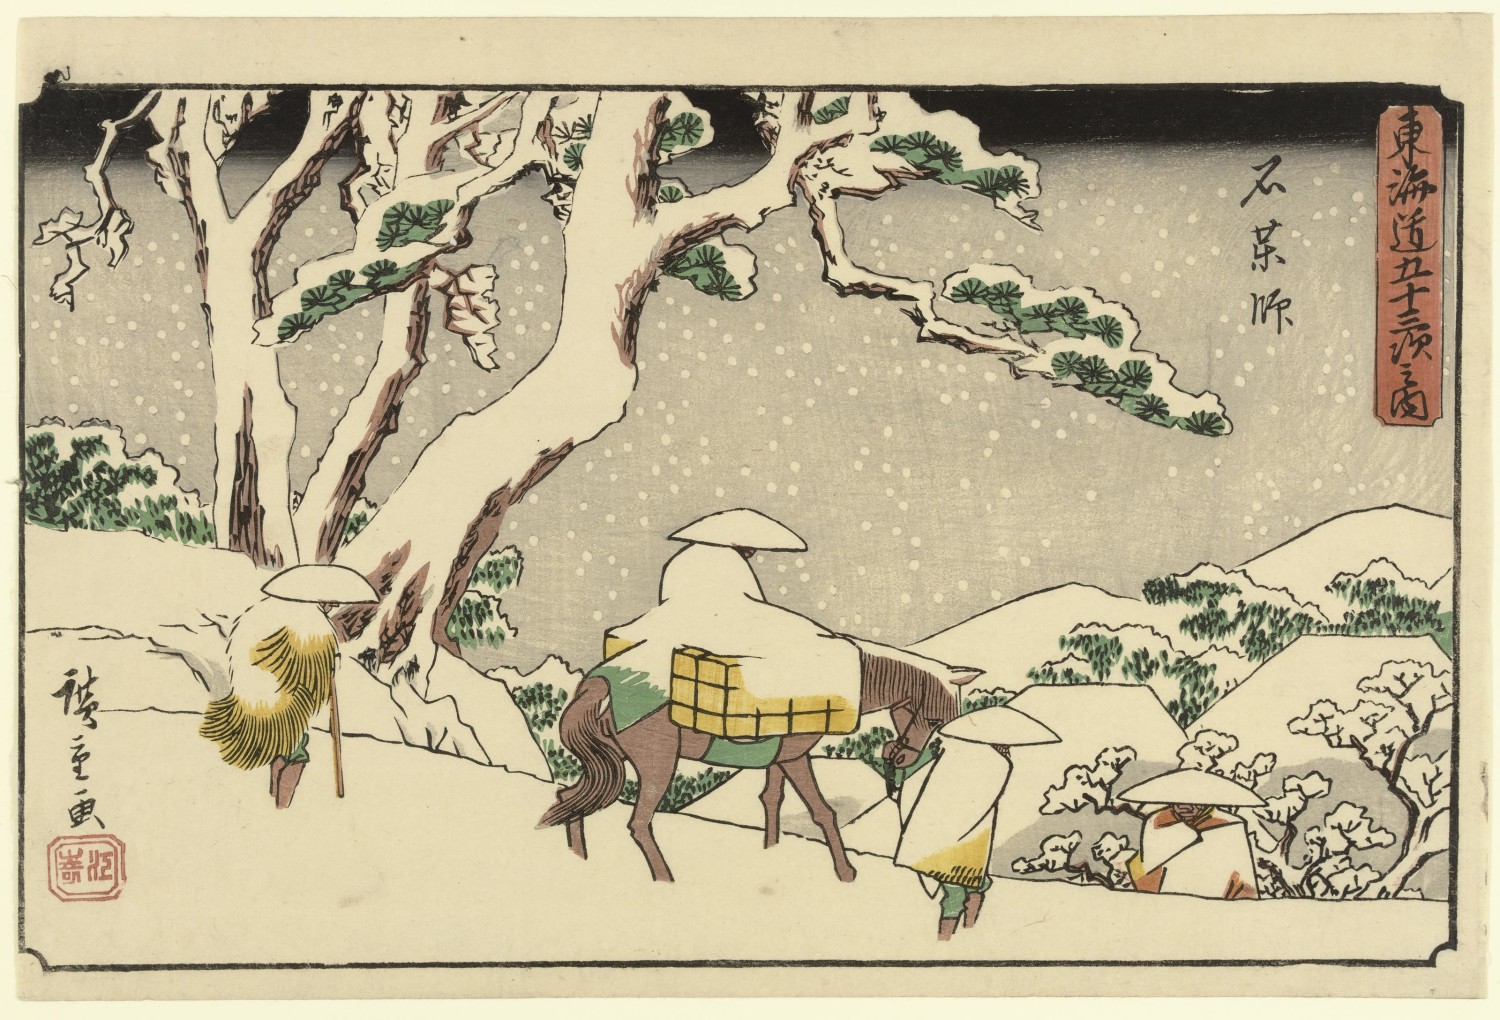 Ando Hiroshige, Ishiyakushi from Gyosho Tokaido